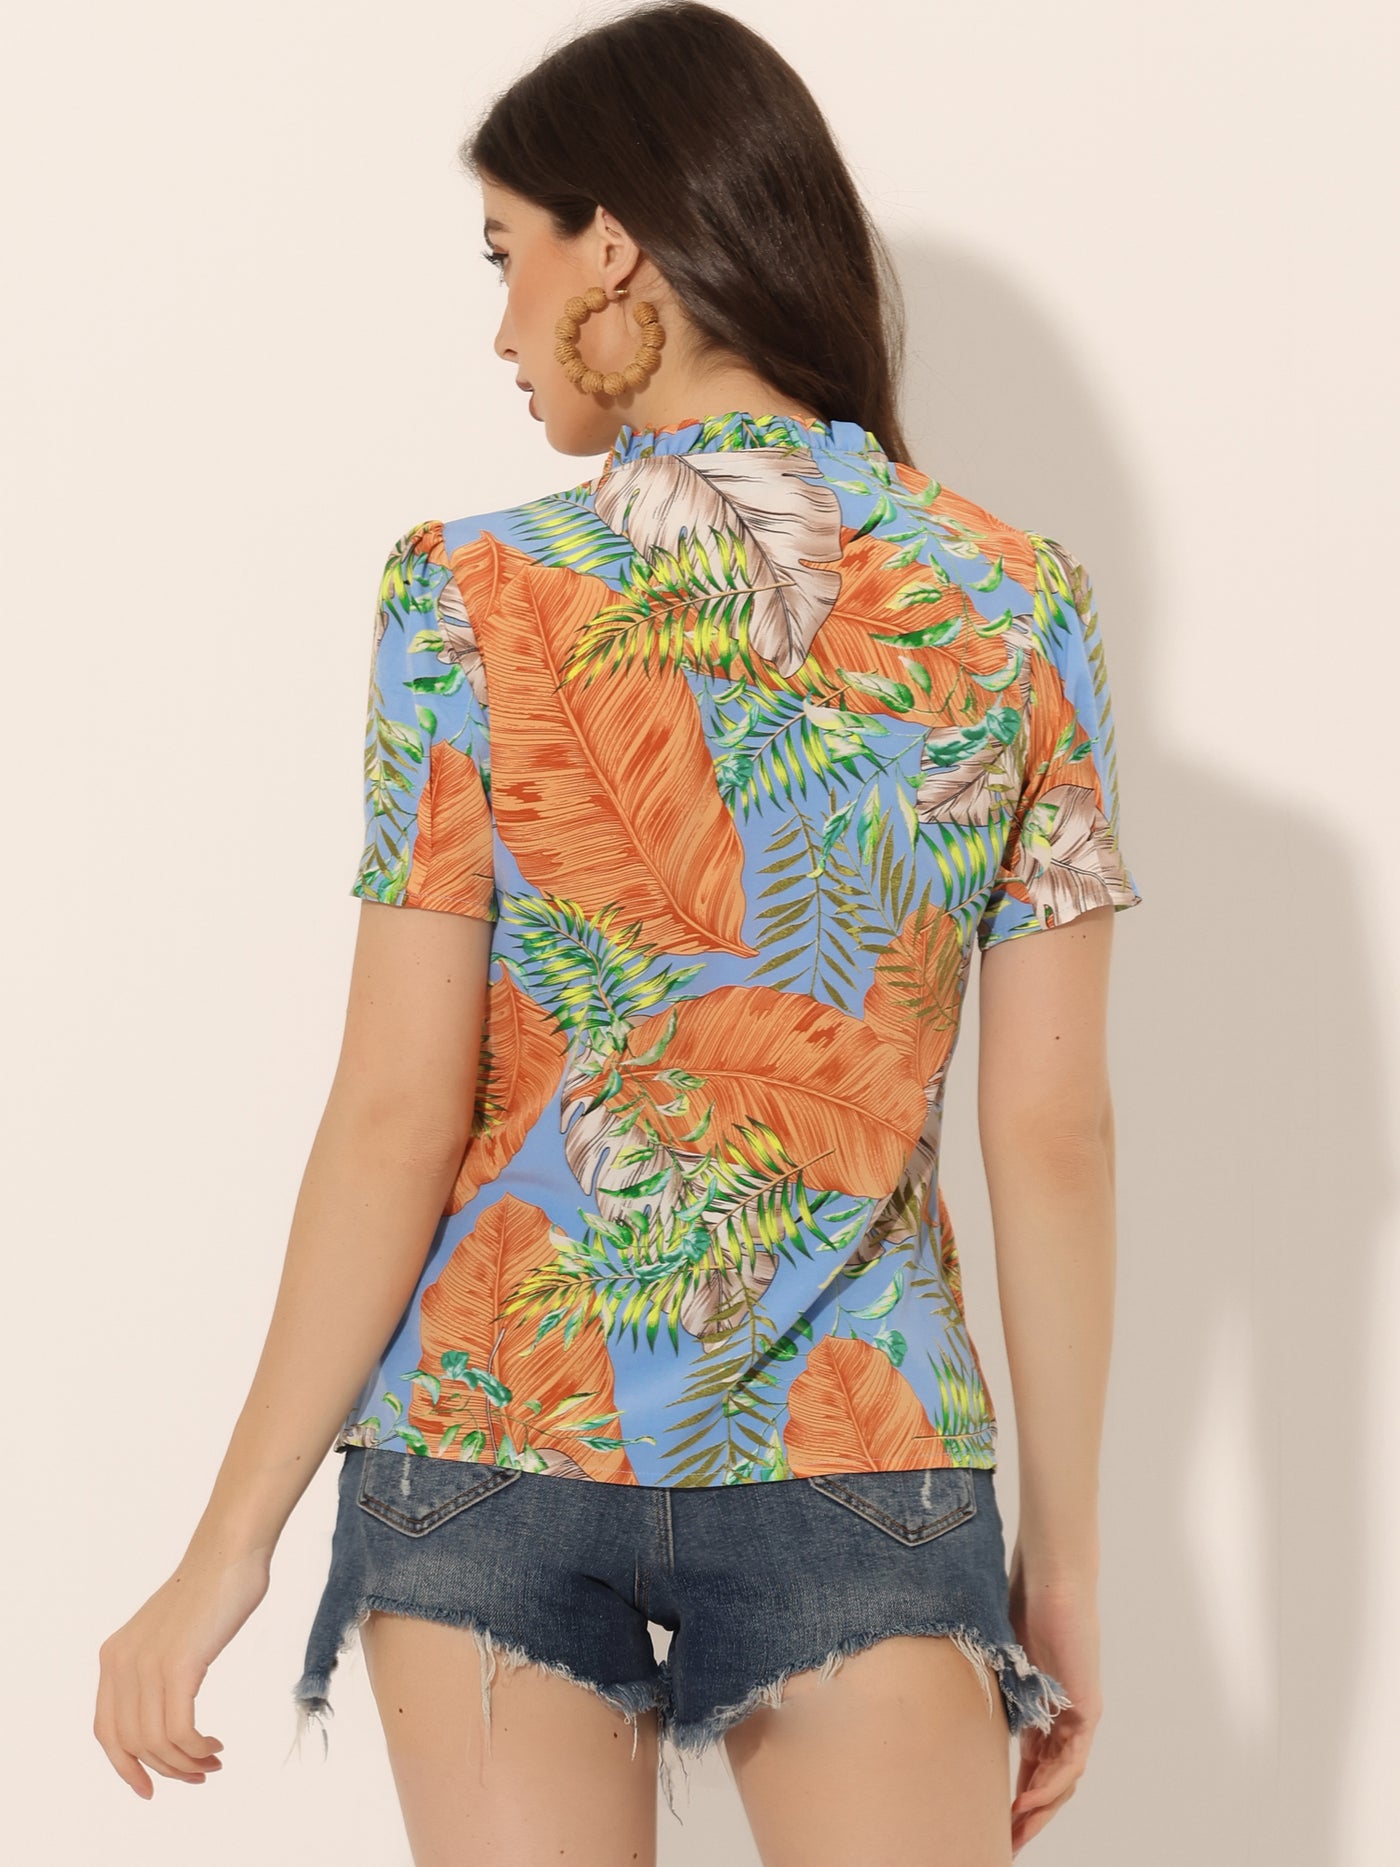 Allegra K Tropical Summer Tops Short Sleeve V Neck Printed Blouse